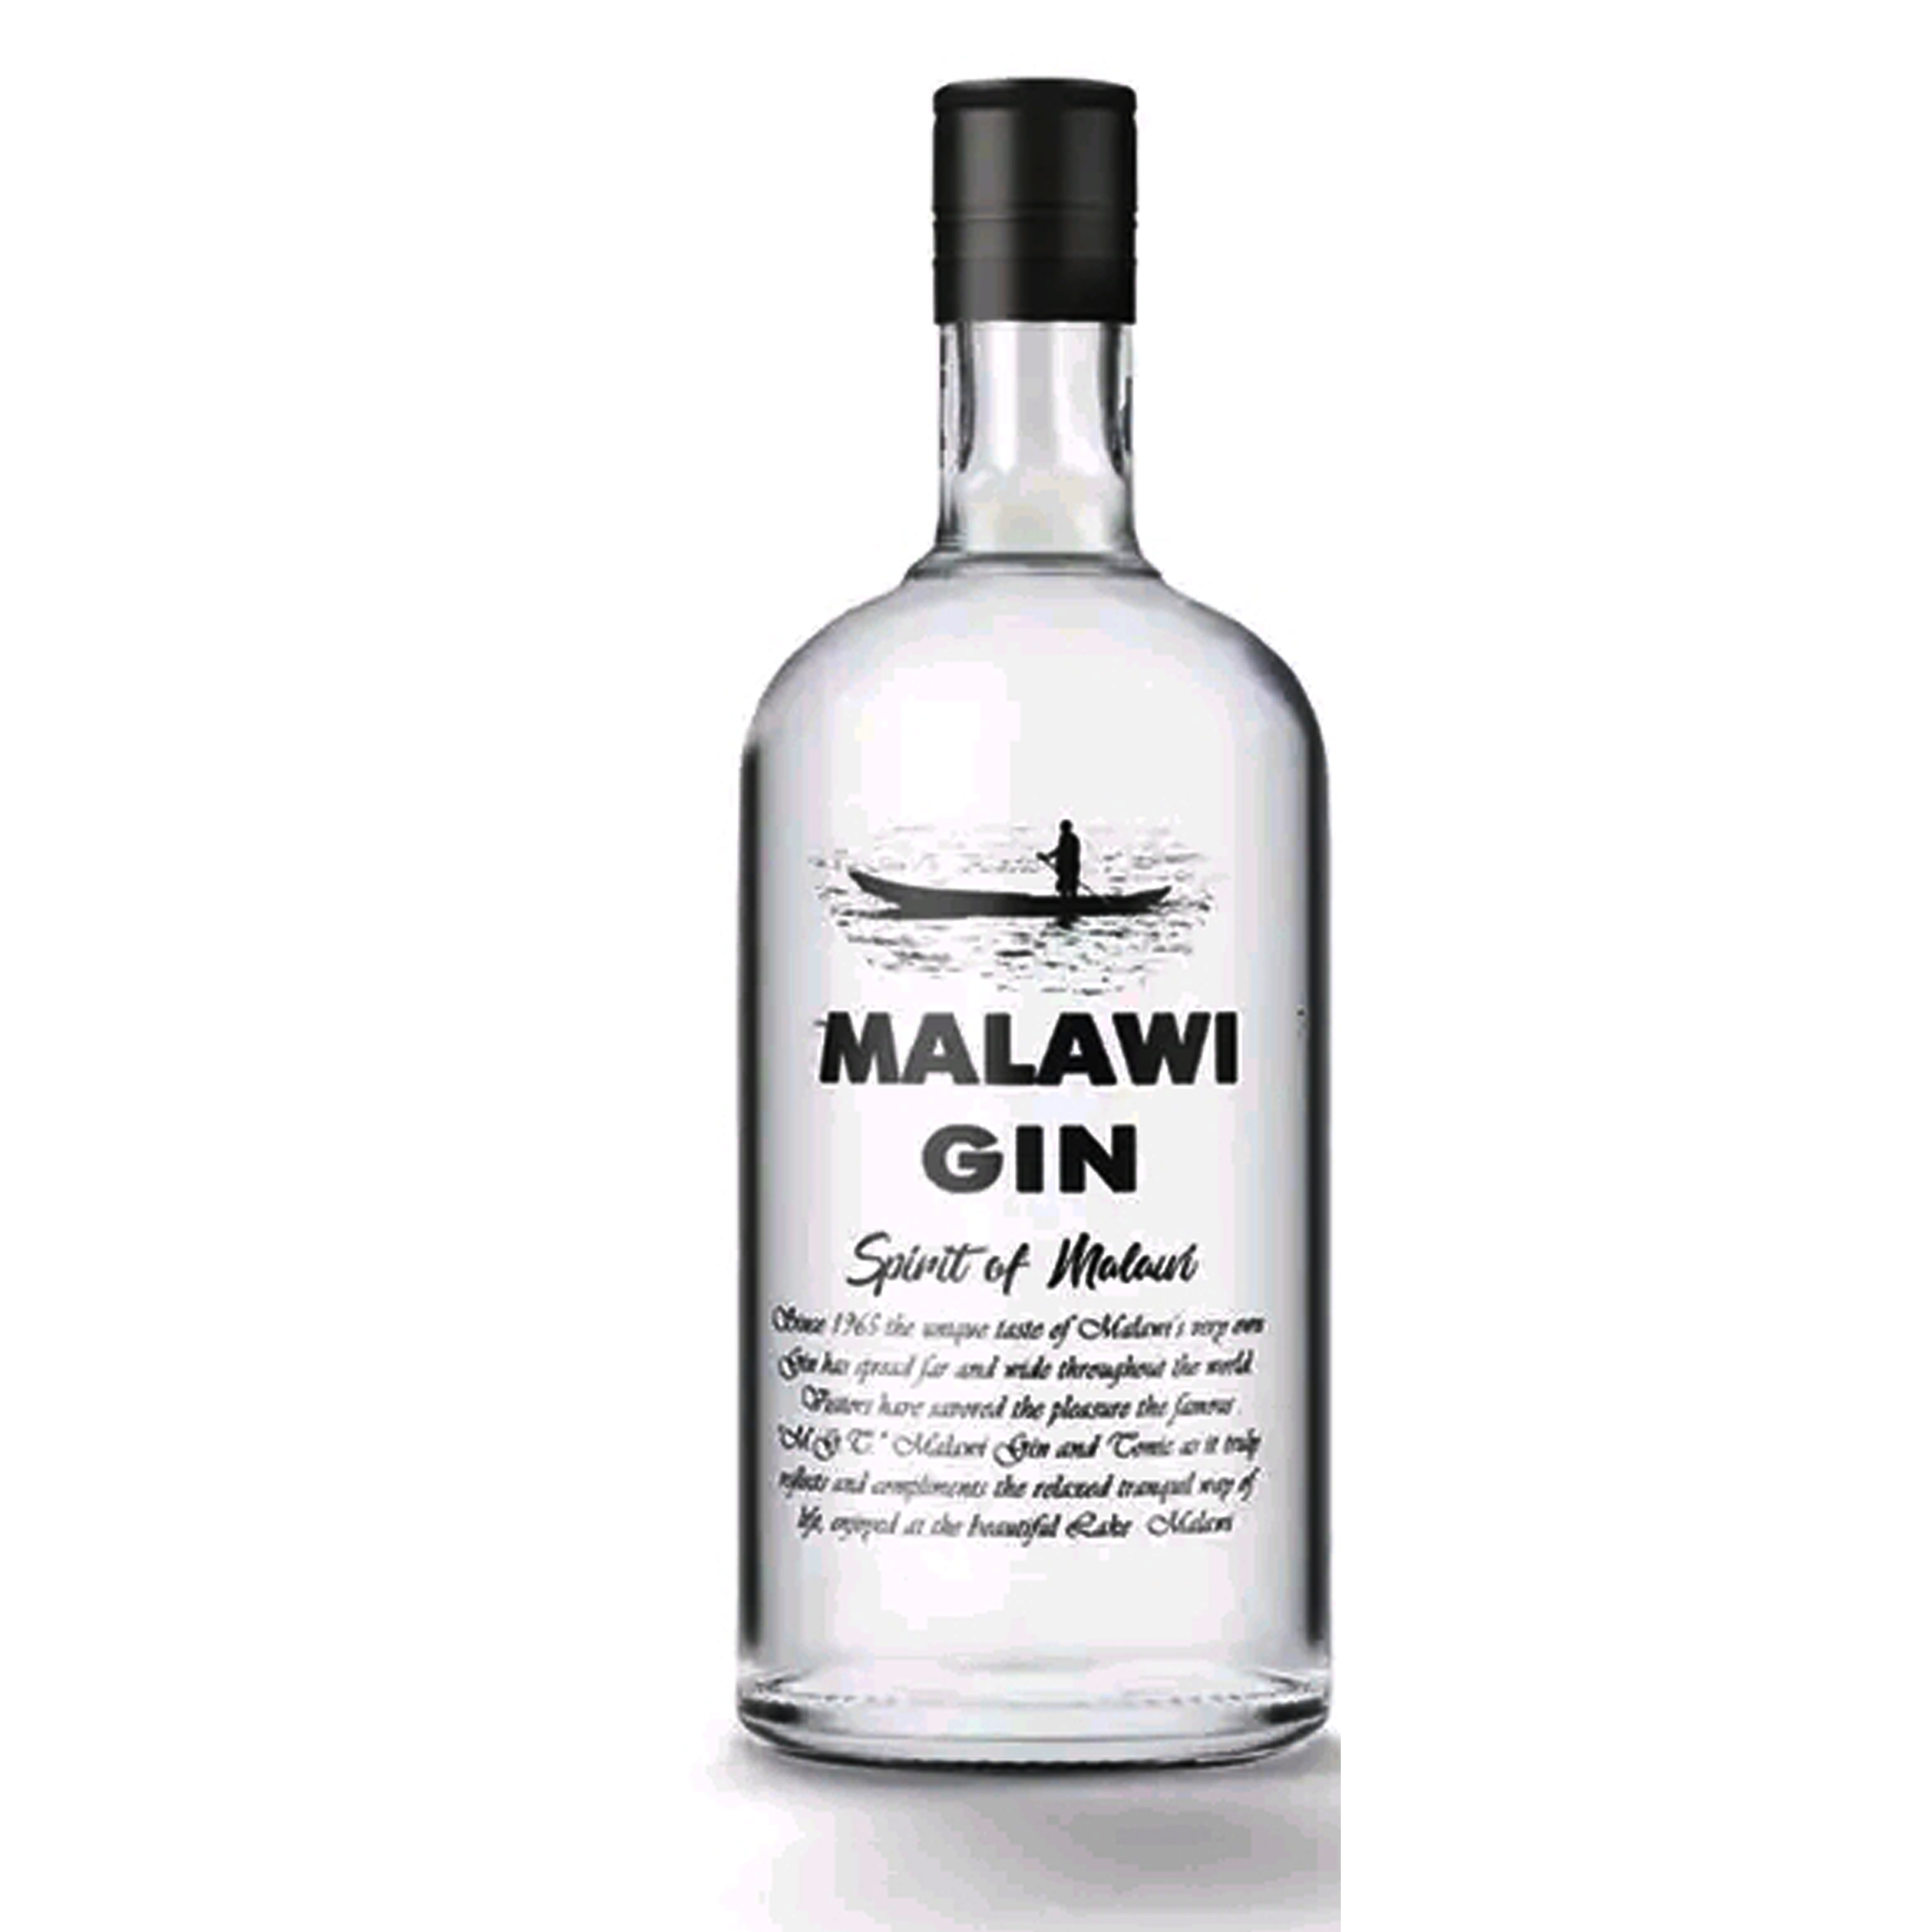 Malawi Gin